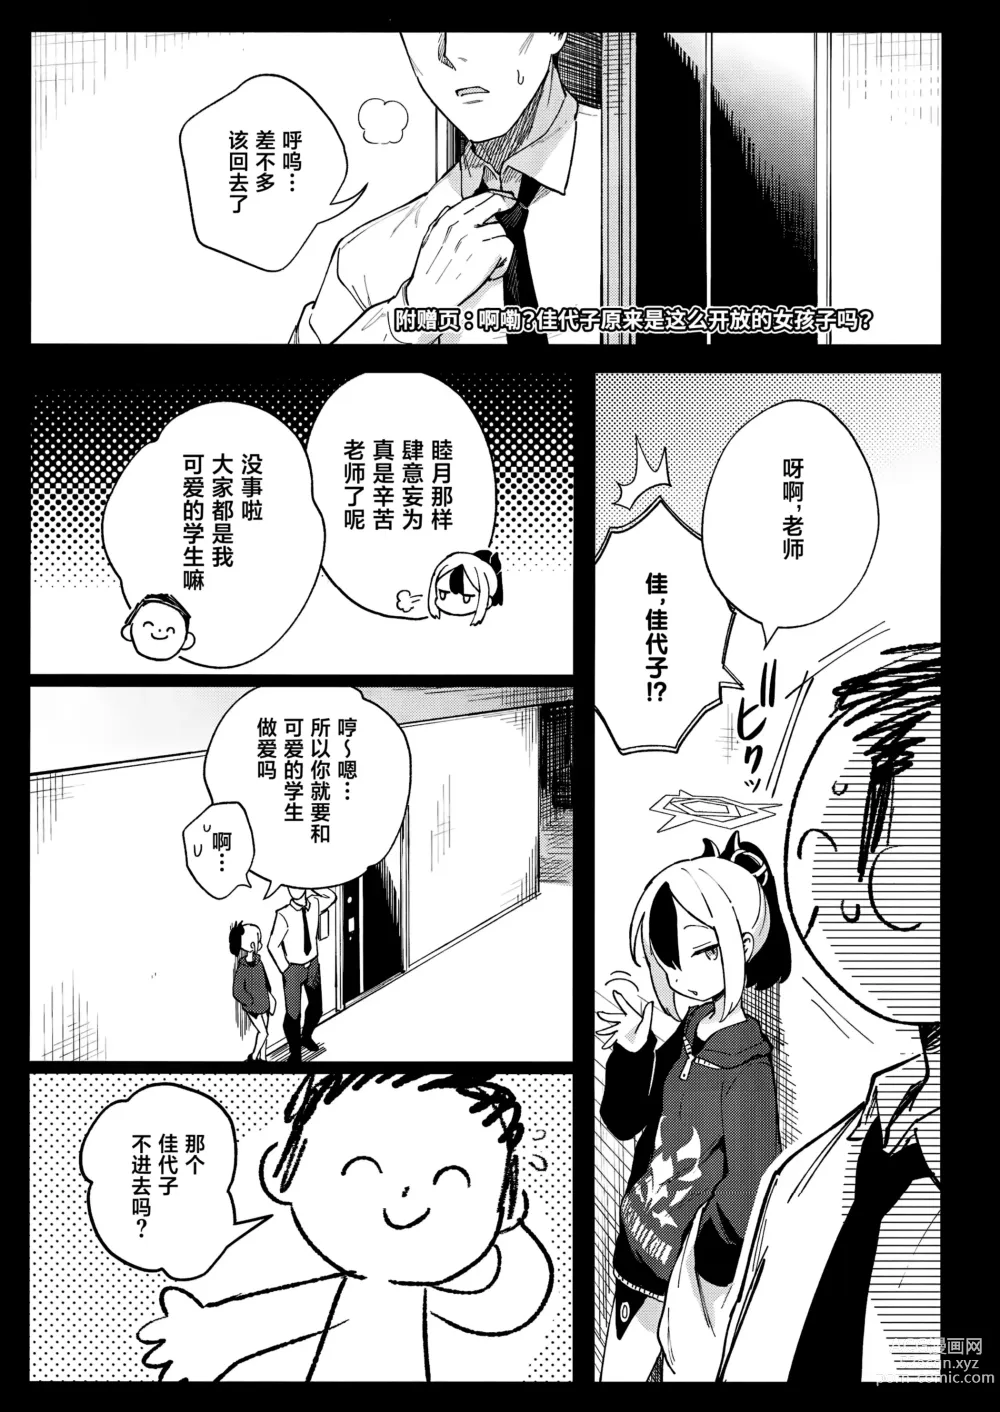 Page 26 of doujinshi Sensei to Seito no Kankei tte Konna ni mo Open nanoo!?